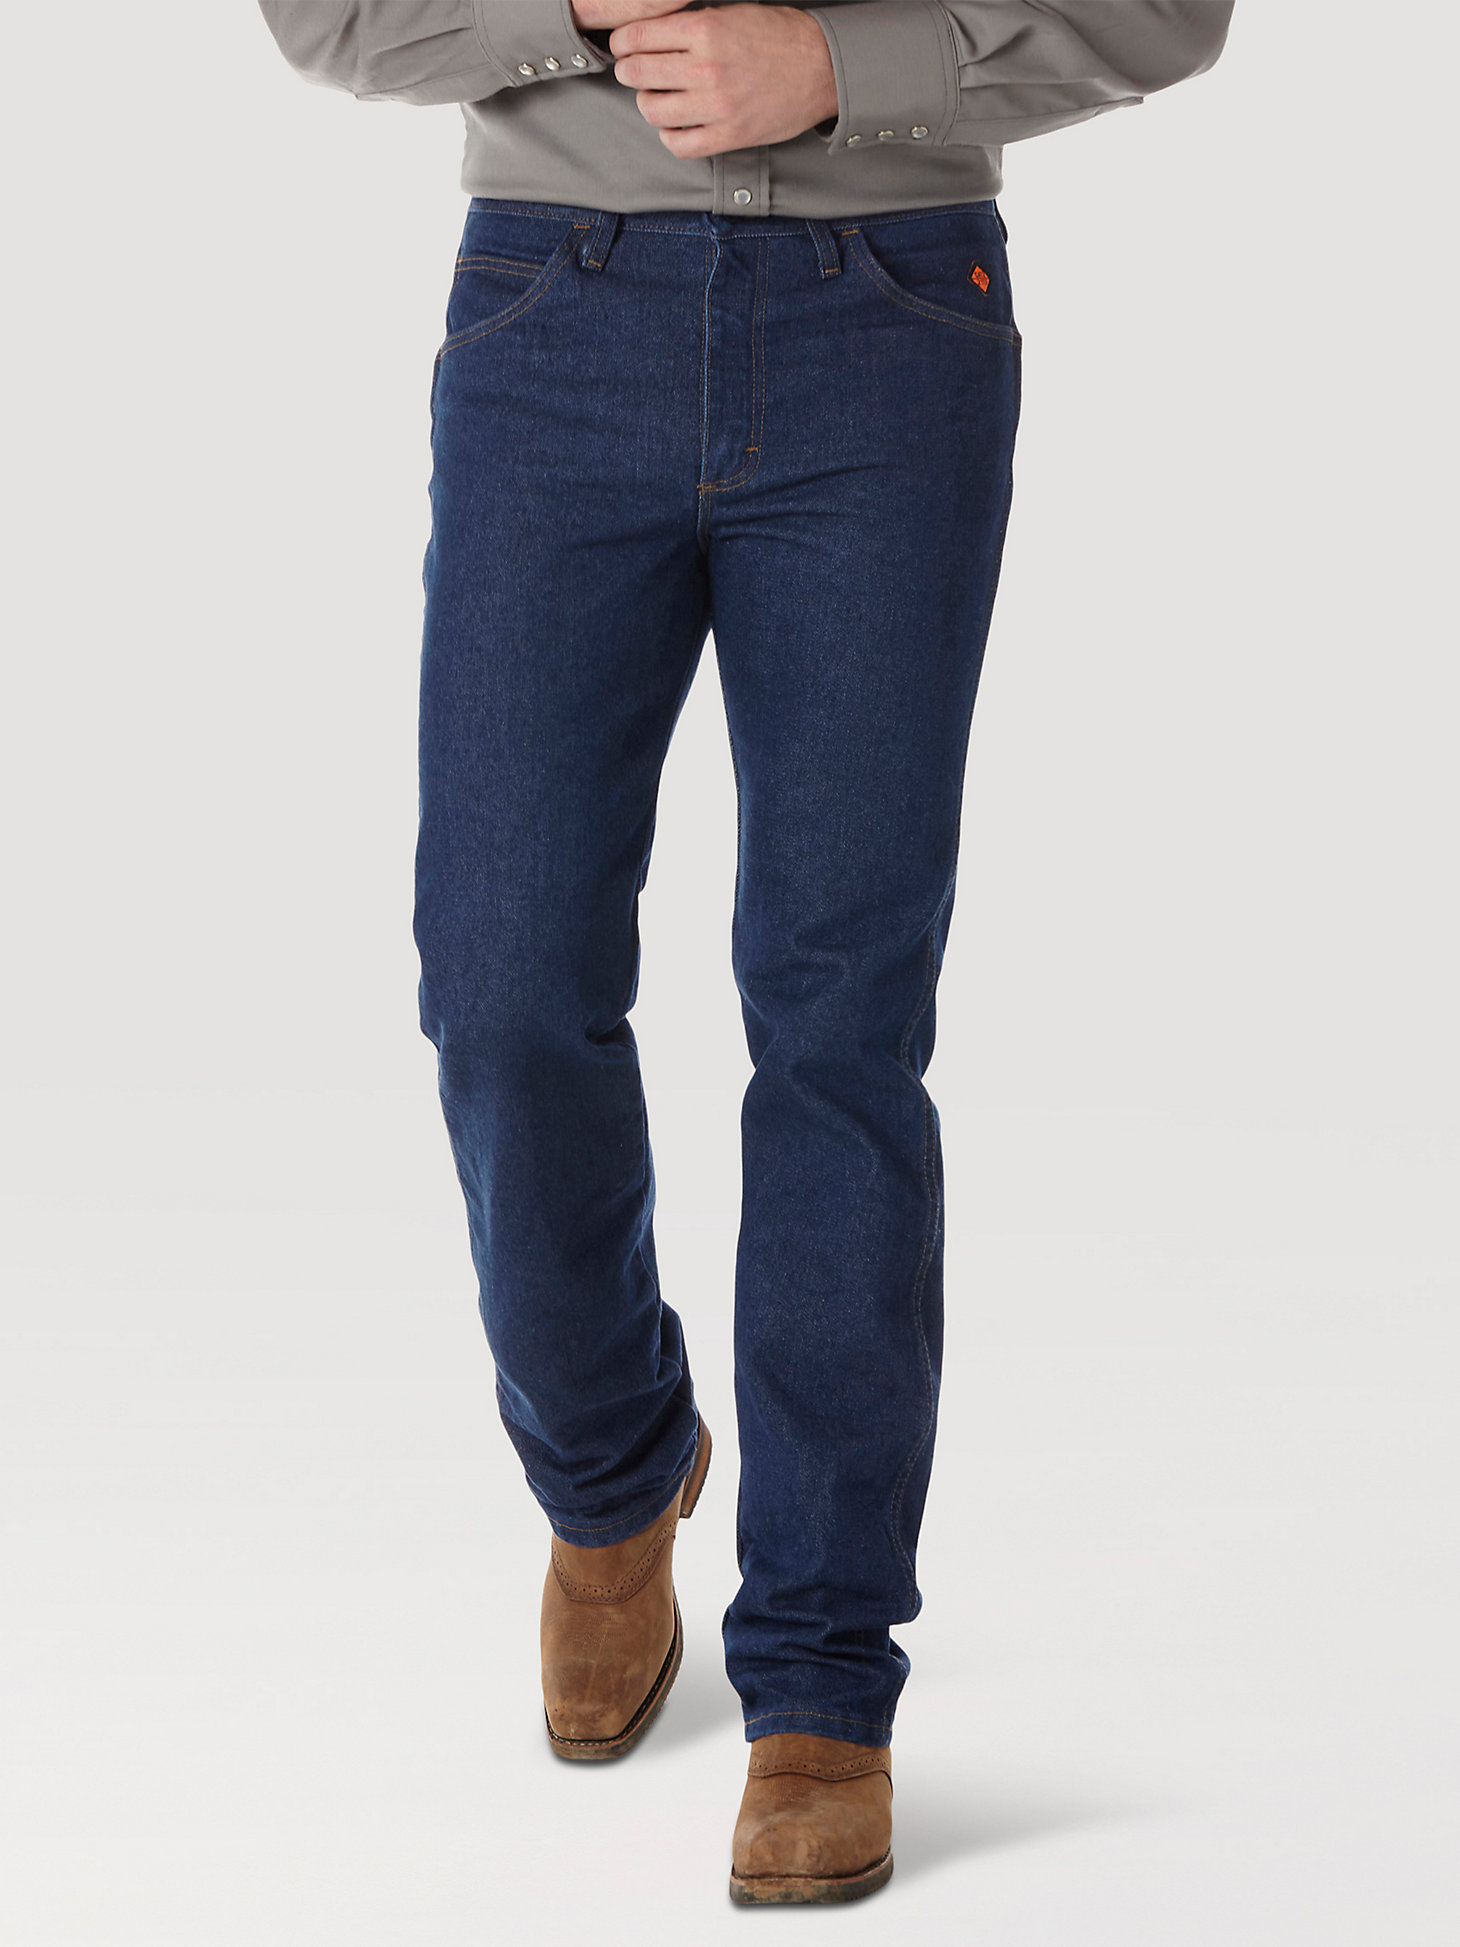 Wrangler® FR Flame Resistant Slim Fit Jean in Prewash main view